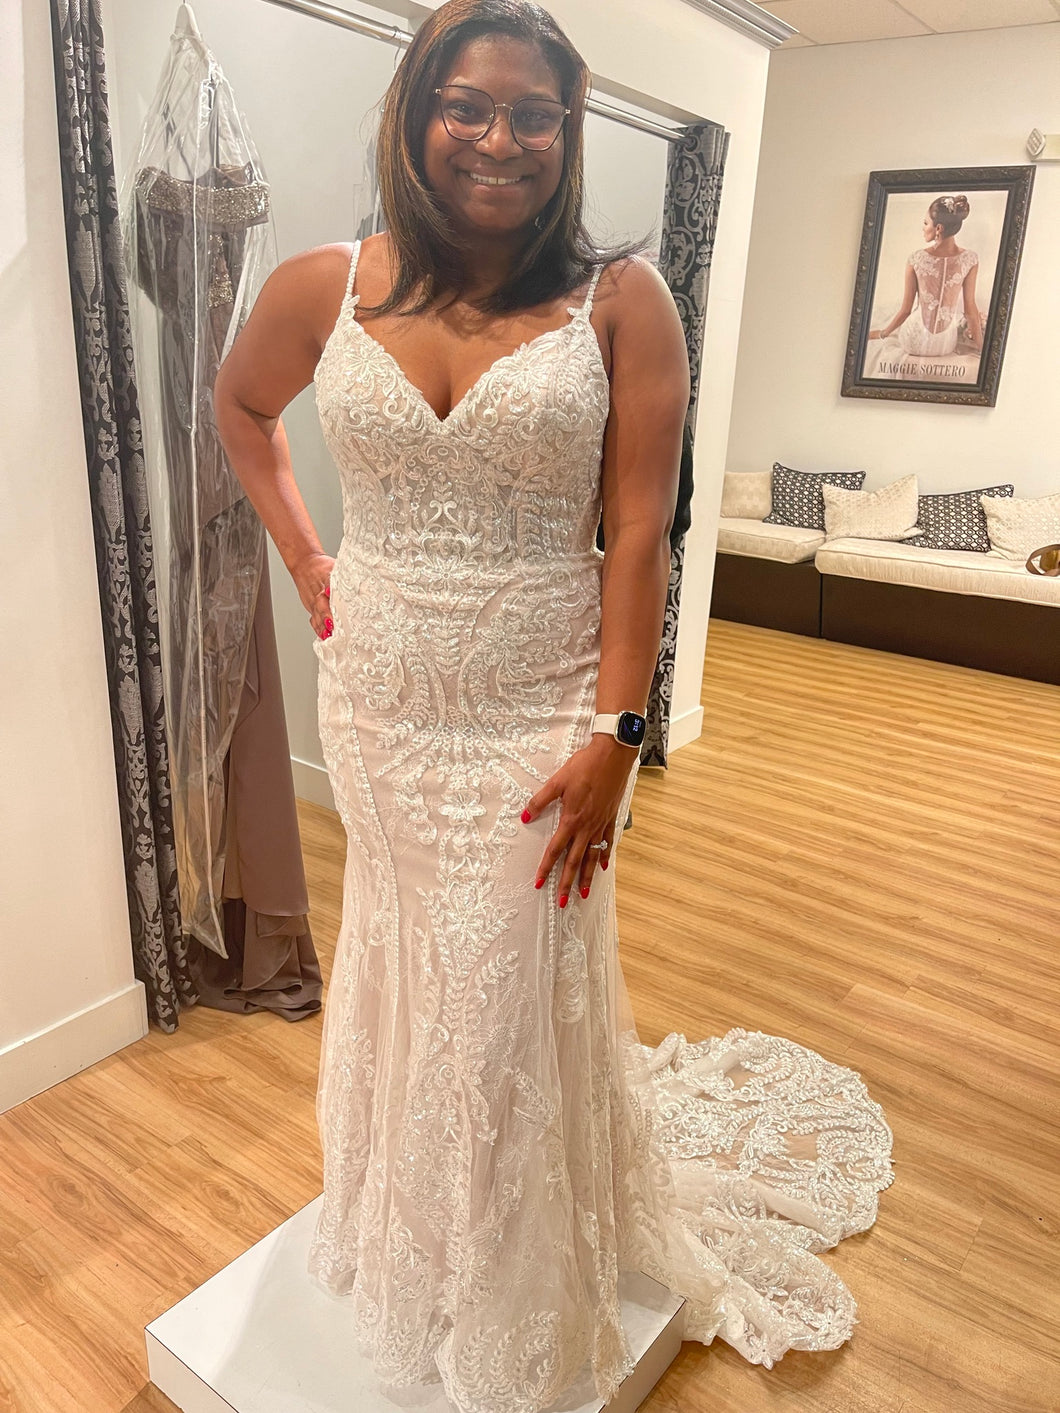 Allure Bridals 'D288 Tiana' wedding dress size-12 NEW